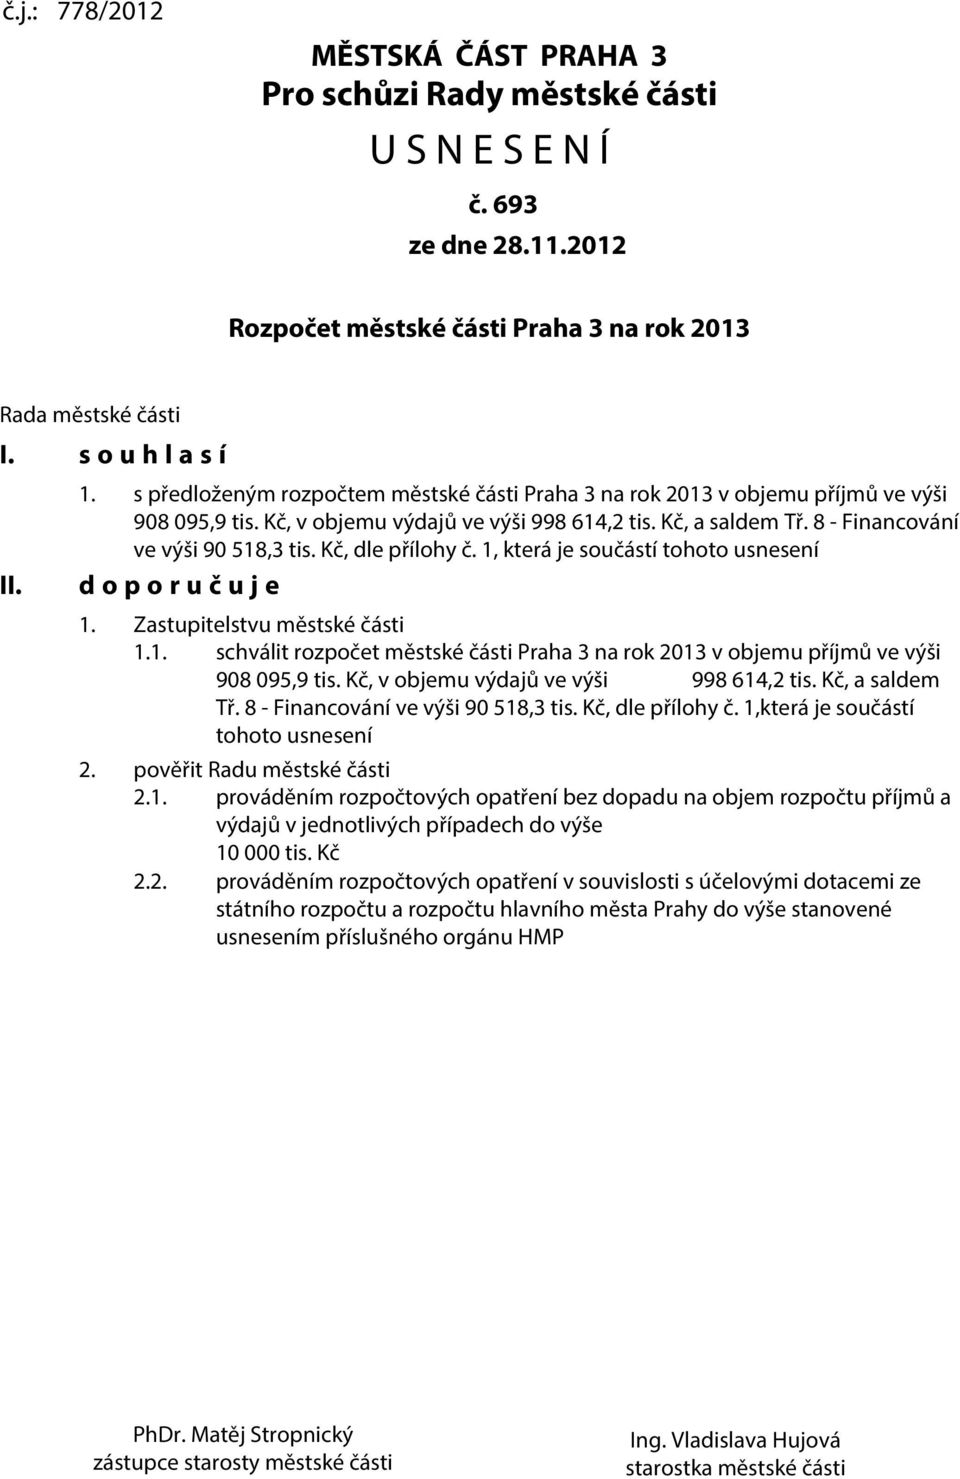 Kč, dle přílohy č. 1, která je součástí tohoto usnesení d o p o r u č u j e 1. Zastupitelstvu městské části 1.1. schválit rozpočet městské části Praha 3 na rok 2013 v objemu příjmů ve výši 908 095,9 tis.